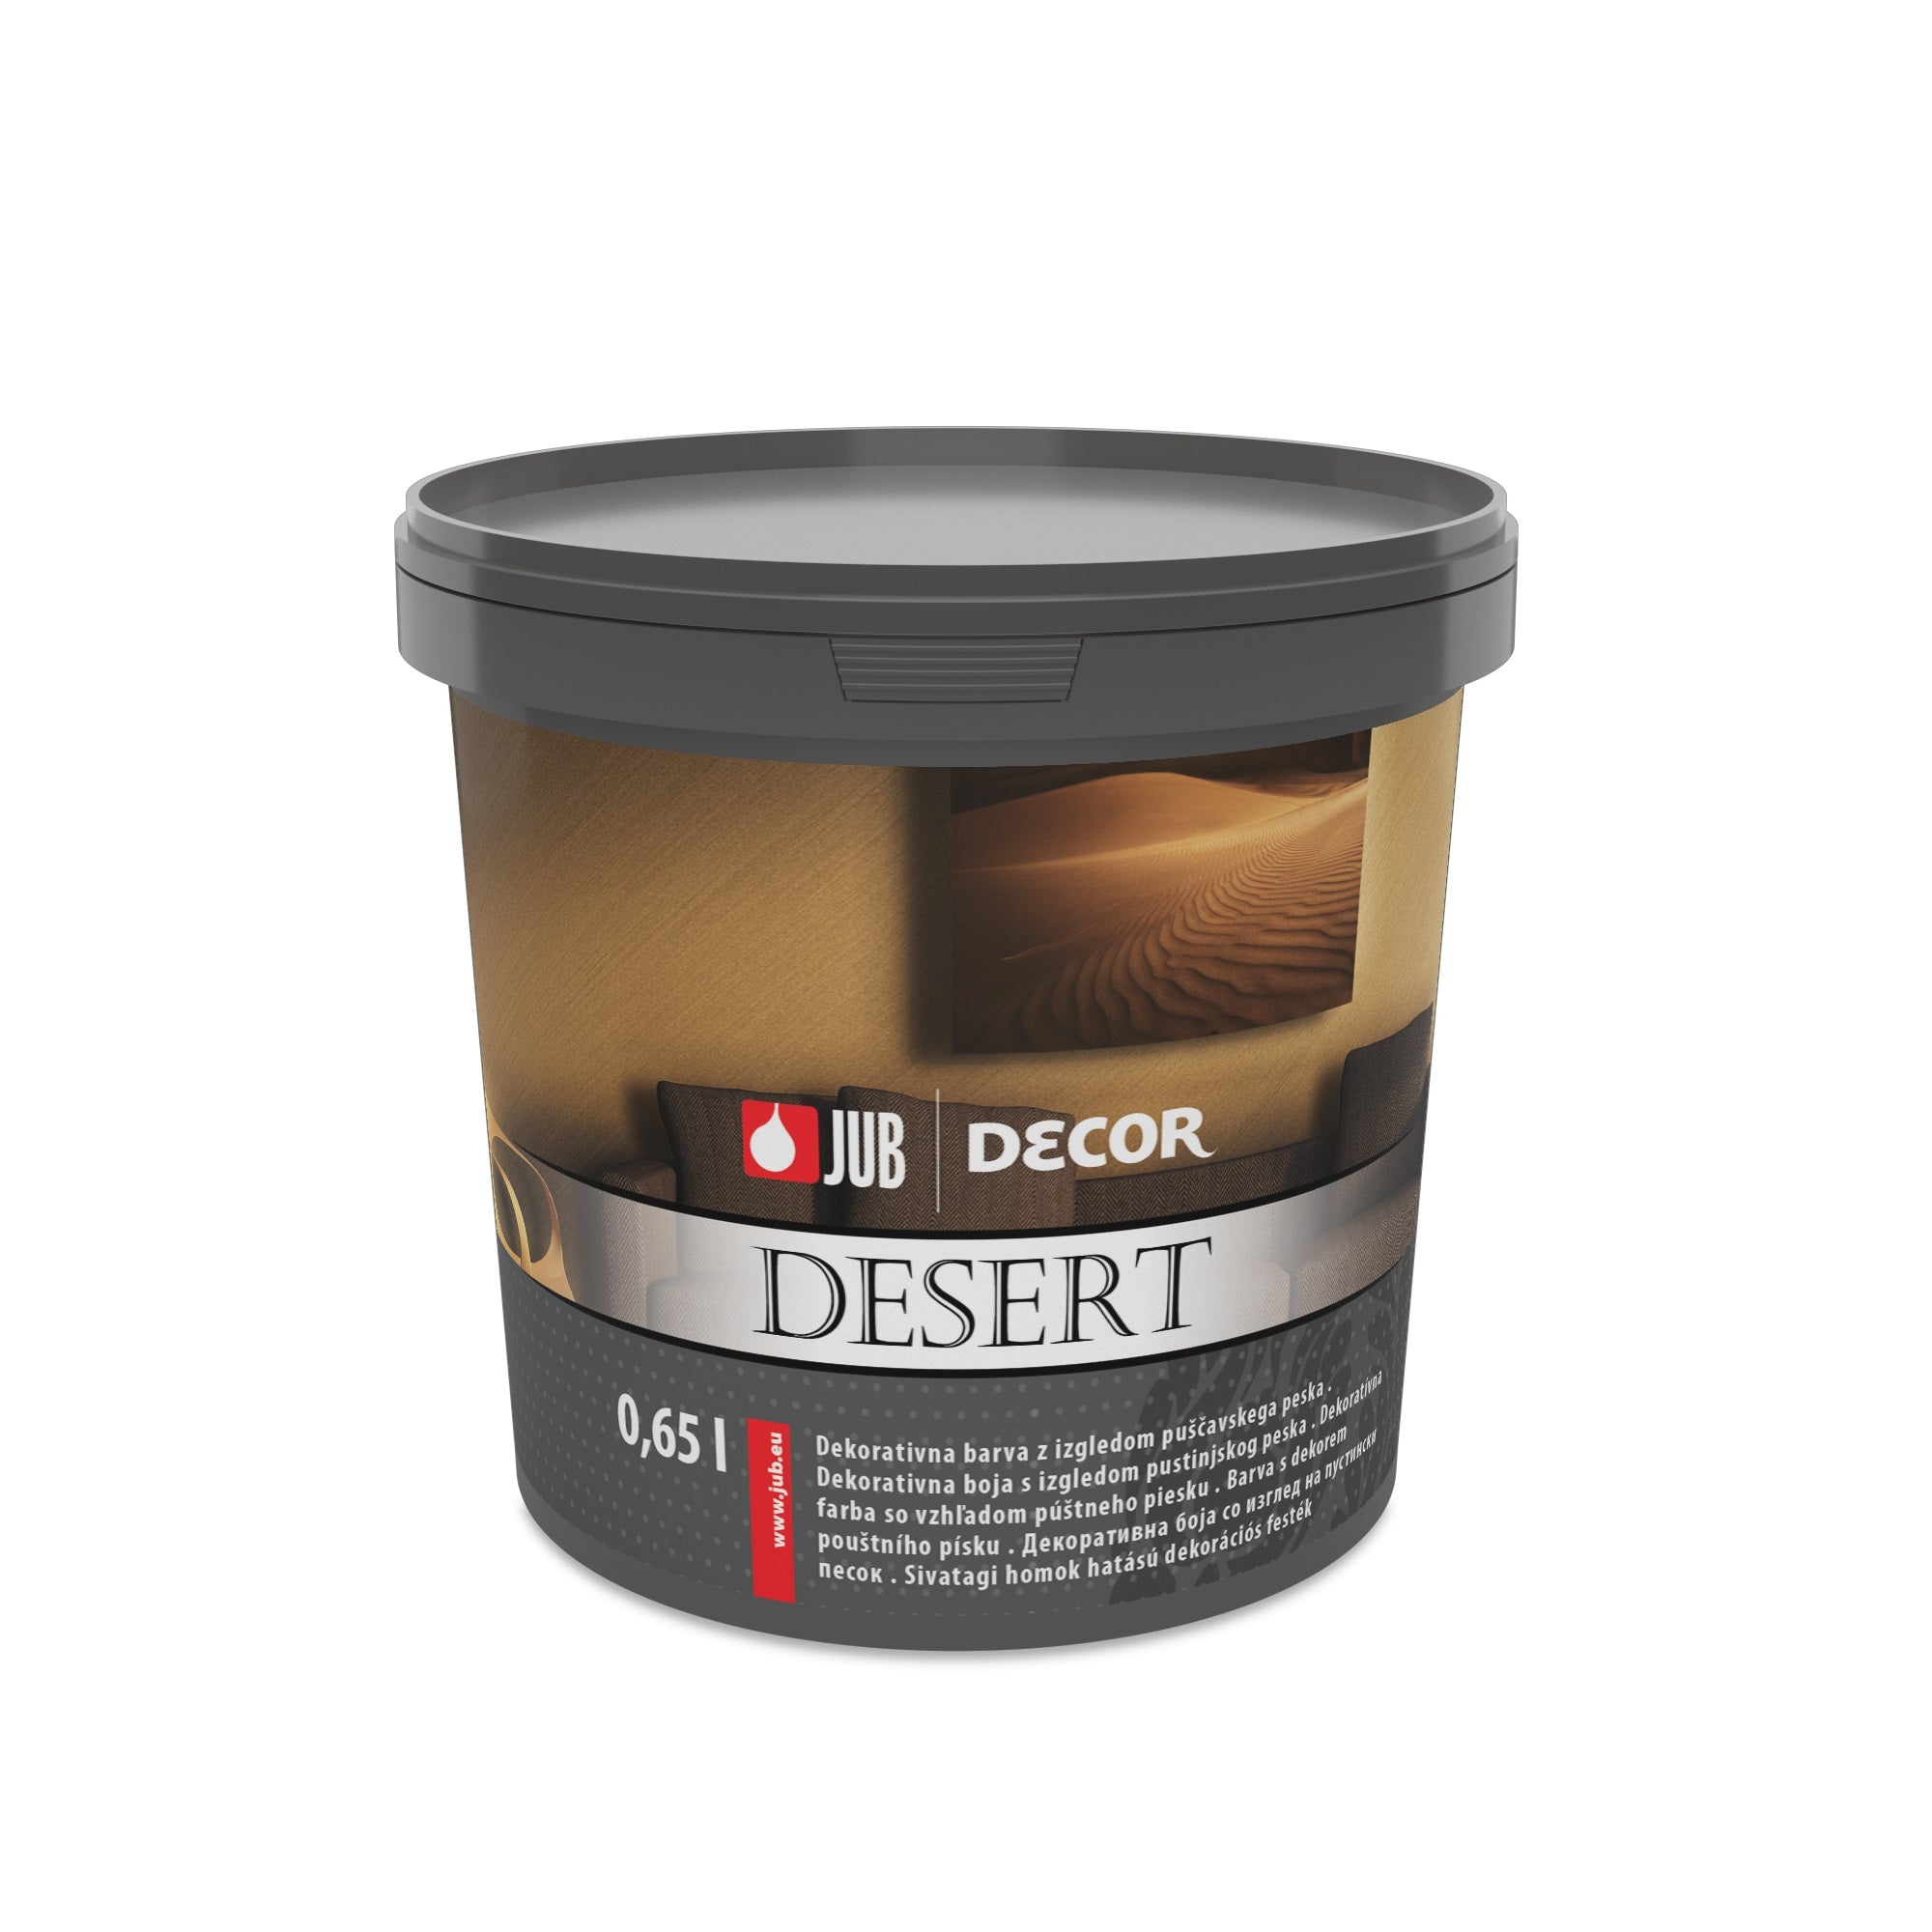 JUB DECOR DESERT Dekoratívna farba s pieskovým efektom 0,65 l